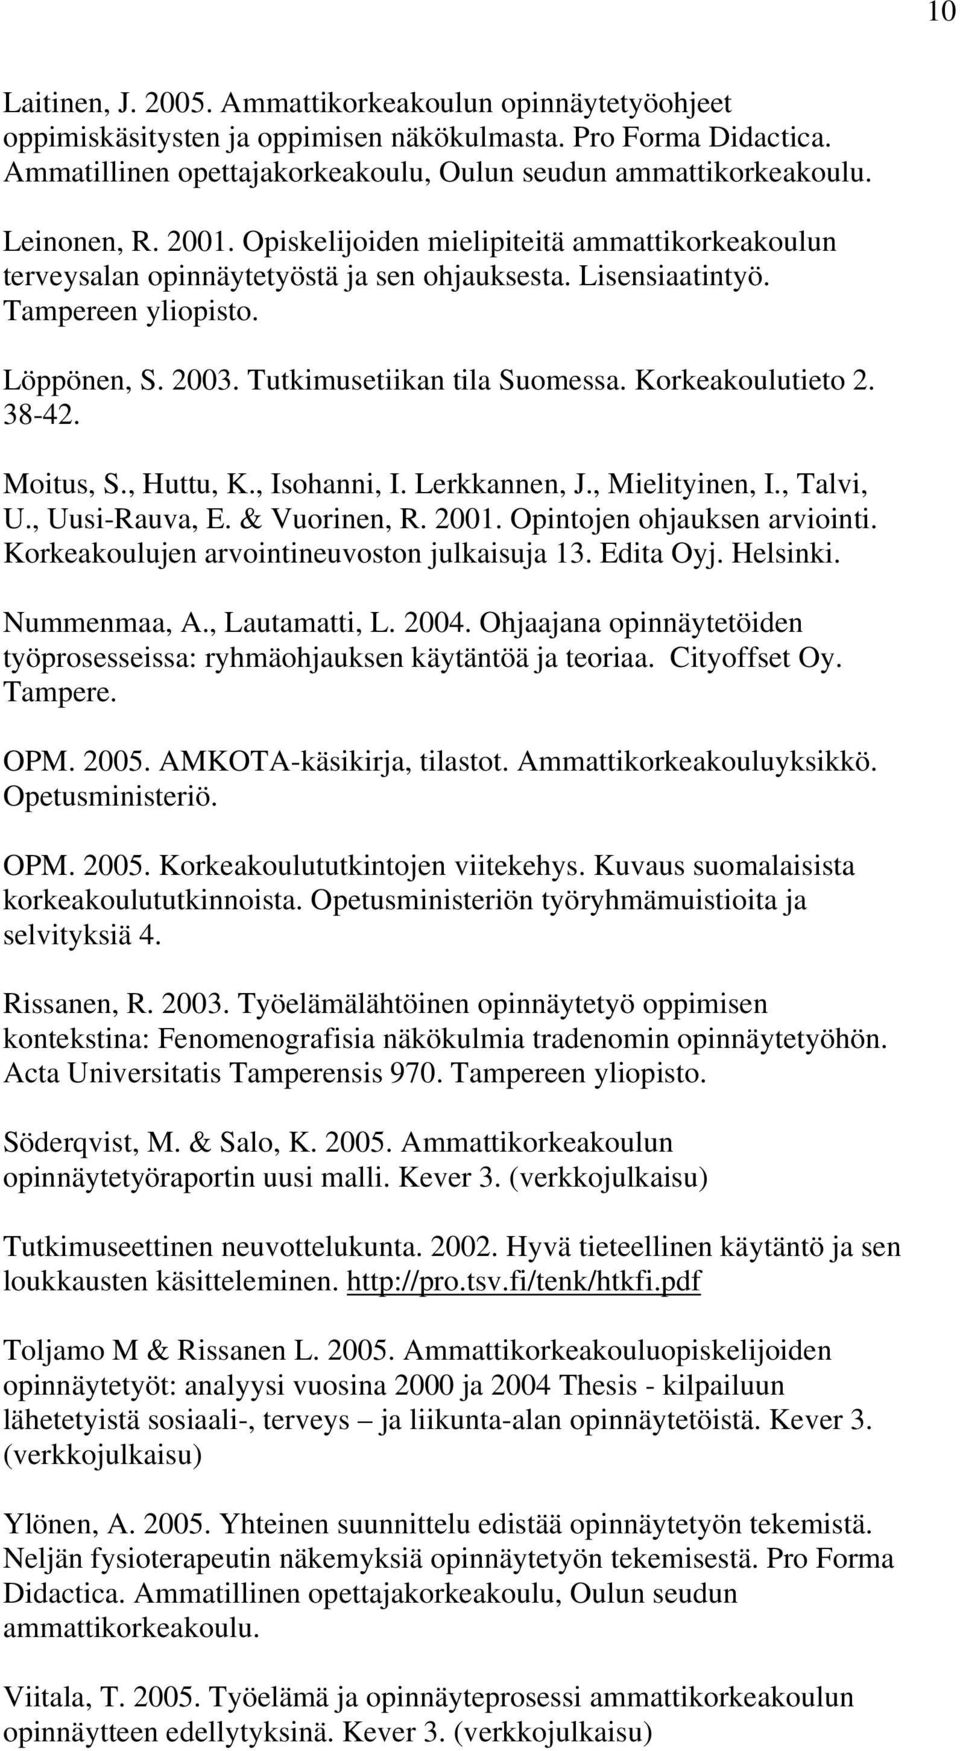 Tutkimusetiikan tila Suomessa. Korkeakoulutieto 2. 38-42. Moitus, S., Huttu, K., Isohanni, I. Lerkkannen, J., Mielityinen, I., Talvi, U., Uusi-Rauva, E. & Vuorinen, R. 2001.